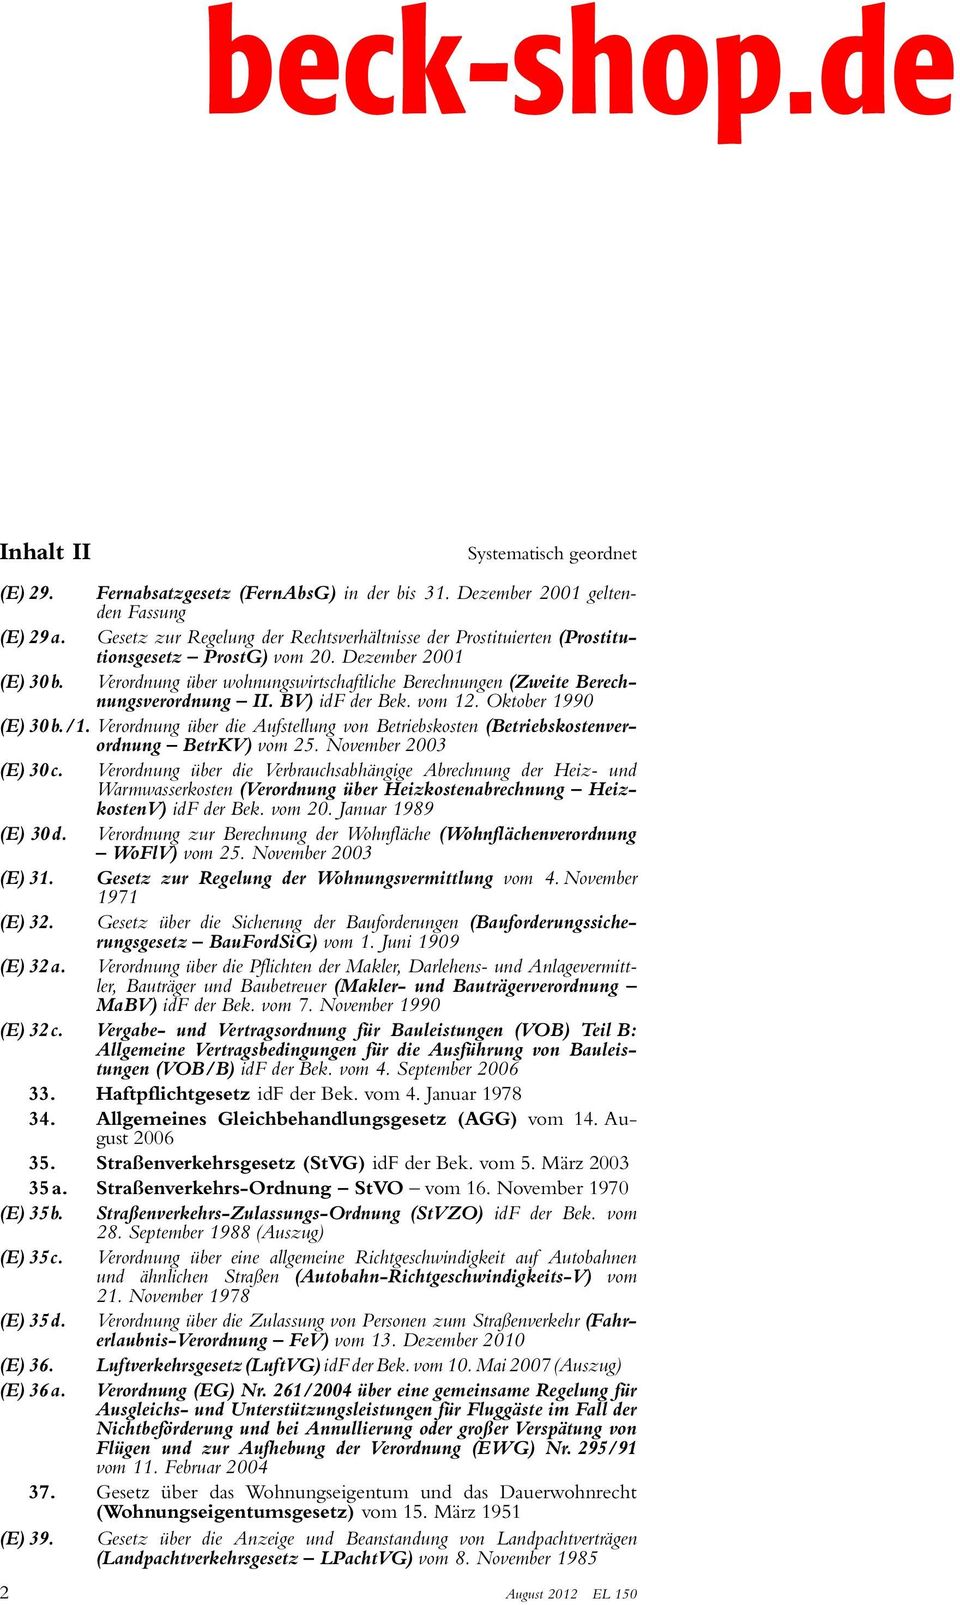 Verordnung über wohnungswirtschaftliche Berechnungen (Zweite Berechnungsverordnung II. BV) idf der Bek. vom 12. Oktober 1990 (E) 30 b./1.